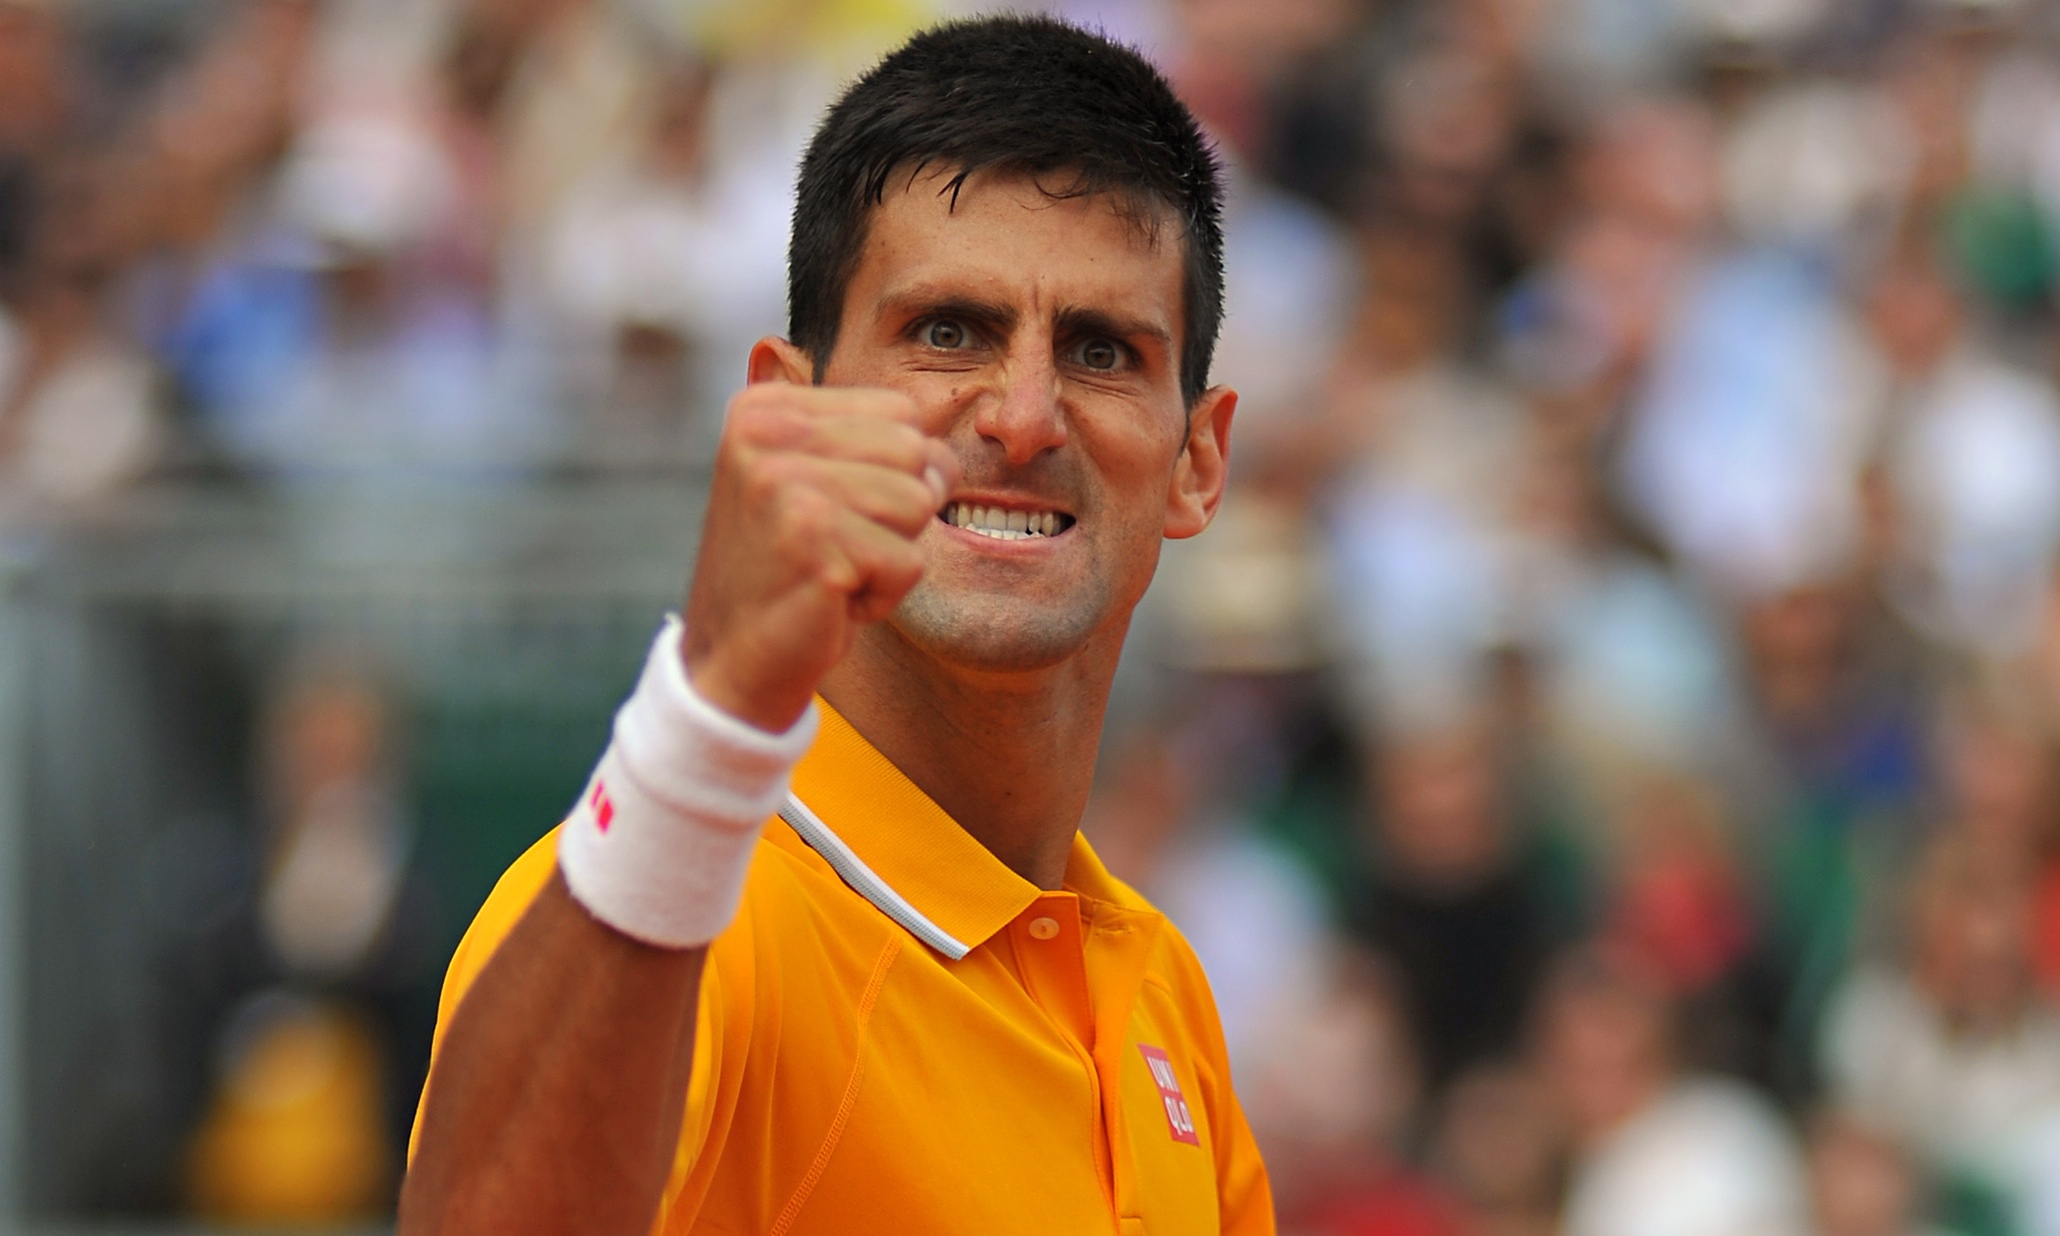 Victorie pentru Djokovic: sârbul va juca la Australian Open. De ce a revocat judecătorul anularea vizei lui Novak Djokovic